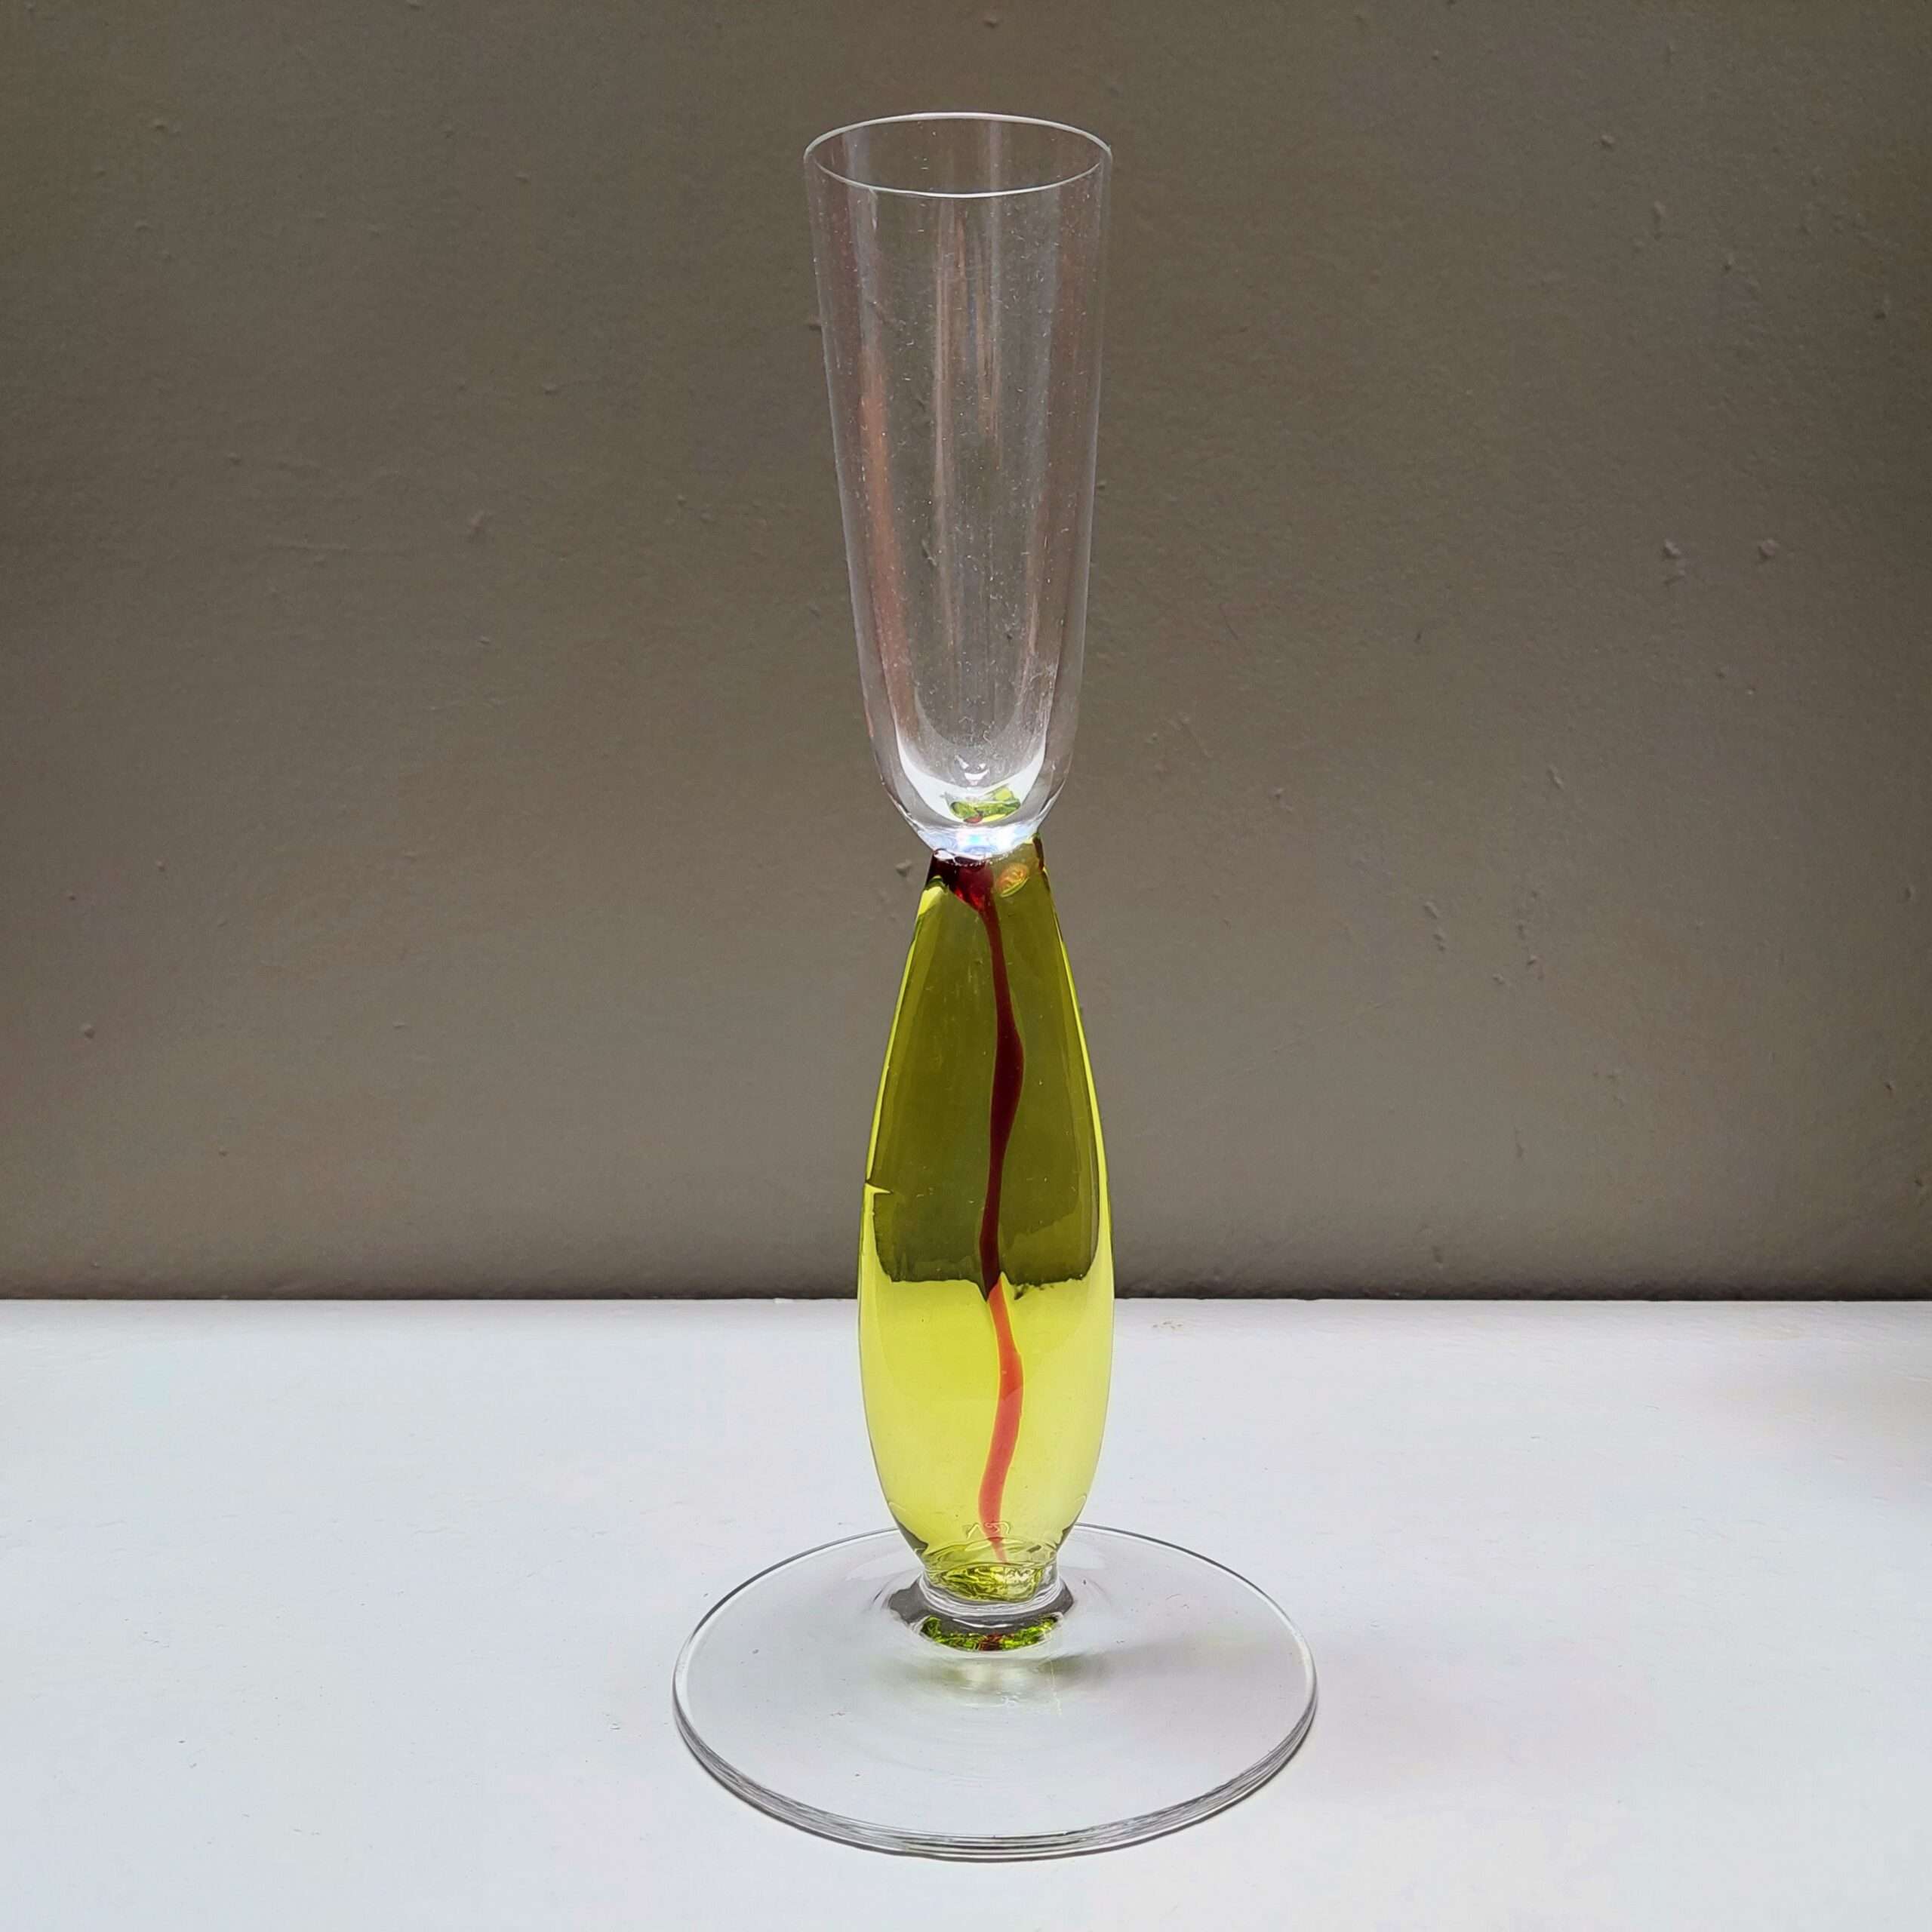 Vaso de murano em forma de taça do designer tcheco Pavel kopřiva